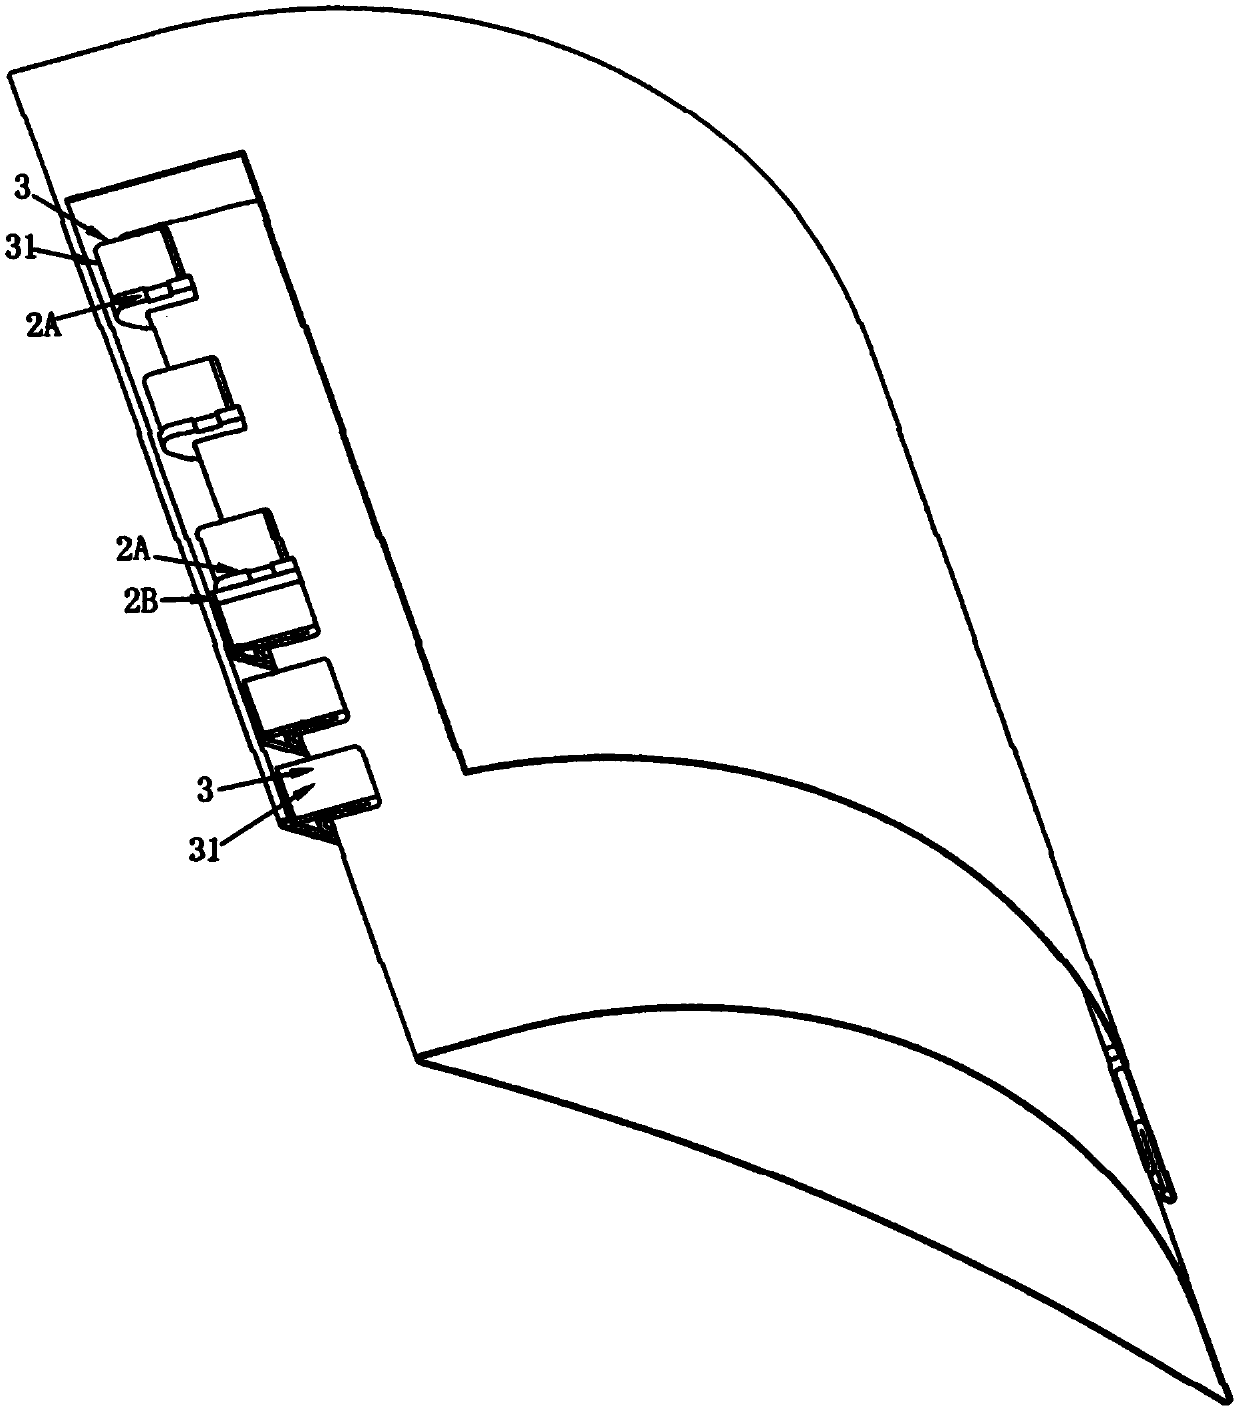 Contact sliding telescopic fan blade